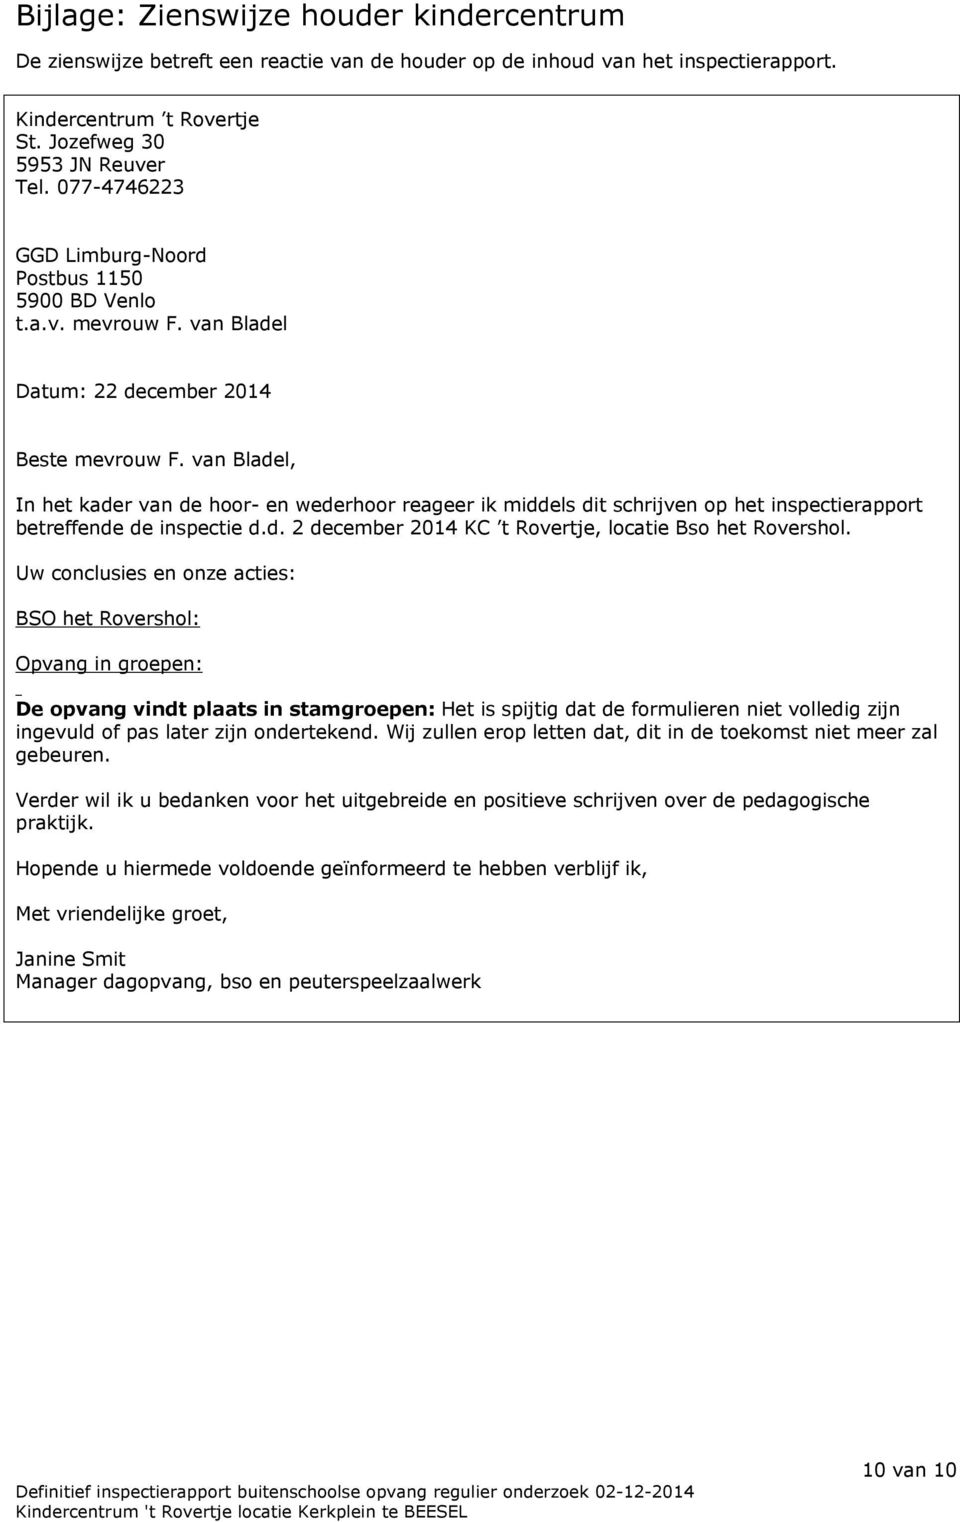 van Bladel, In het kader van de hoor- en wederhoor reageer ik middels dit schrijven op het inspectierapport betreffende de inspectie d.d. 2 december 2014 KC t Rovertje, locatie Bso het Rovershol.